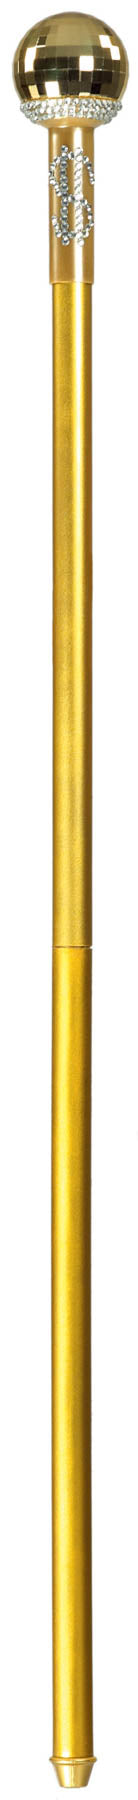 Αποκριάτικο Αξεσουάρ Μπαστούνι δολλάριο χρυσό FF80913